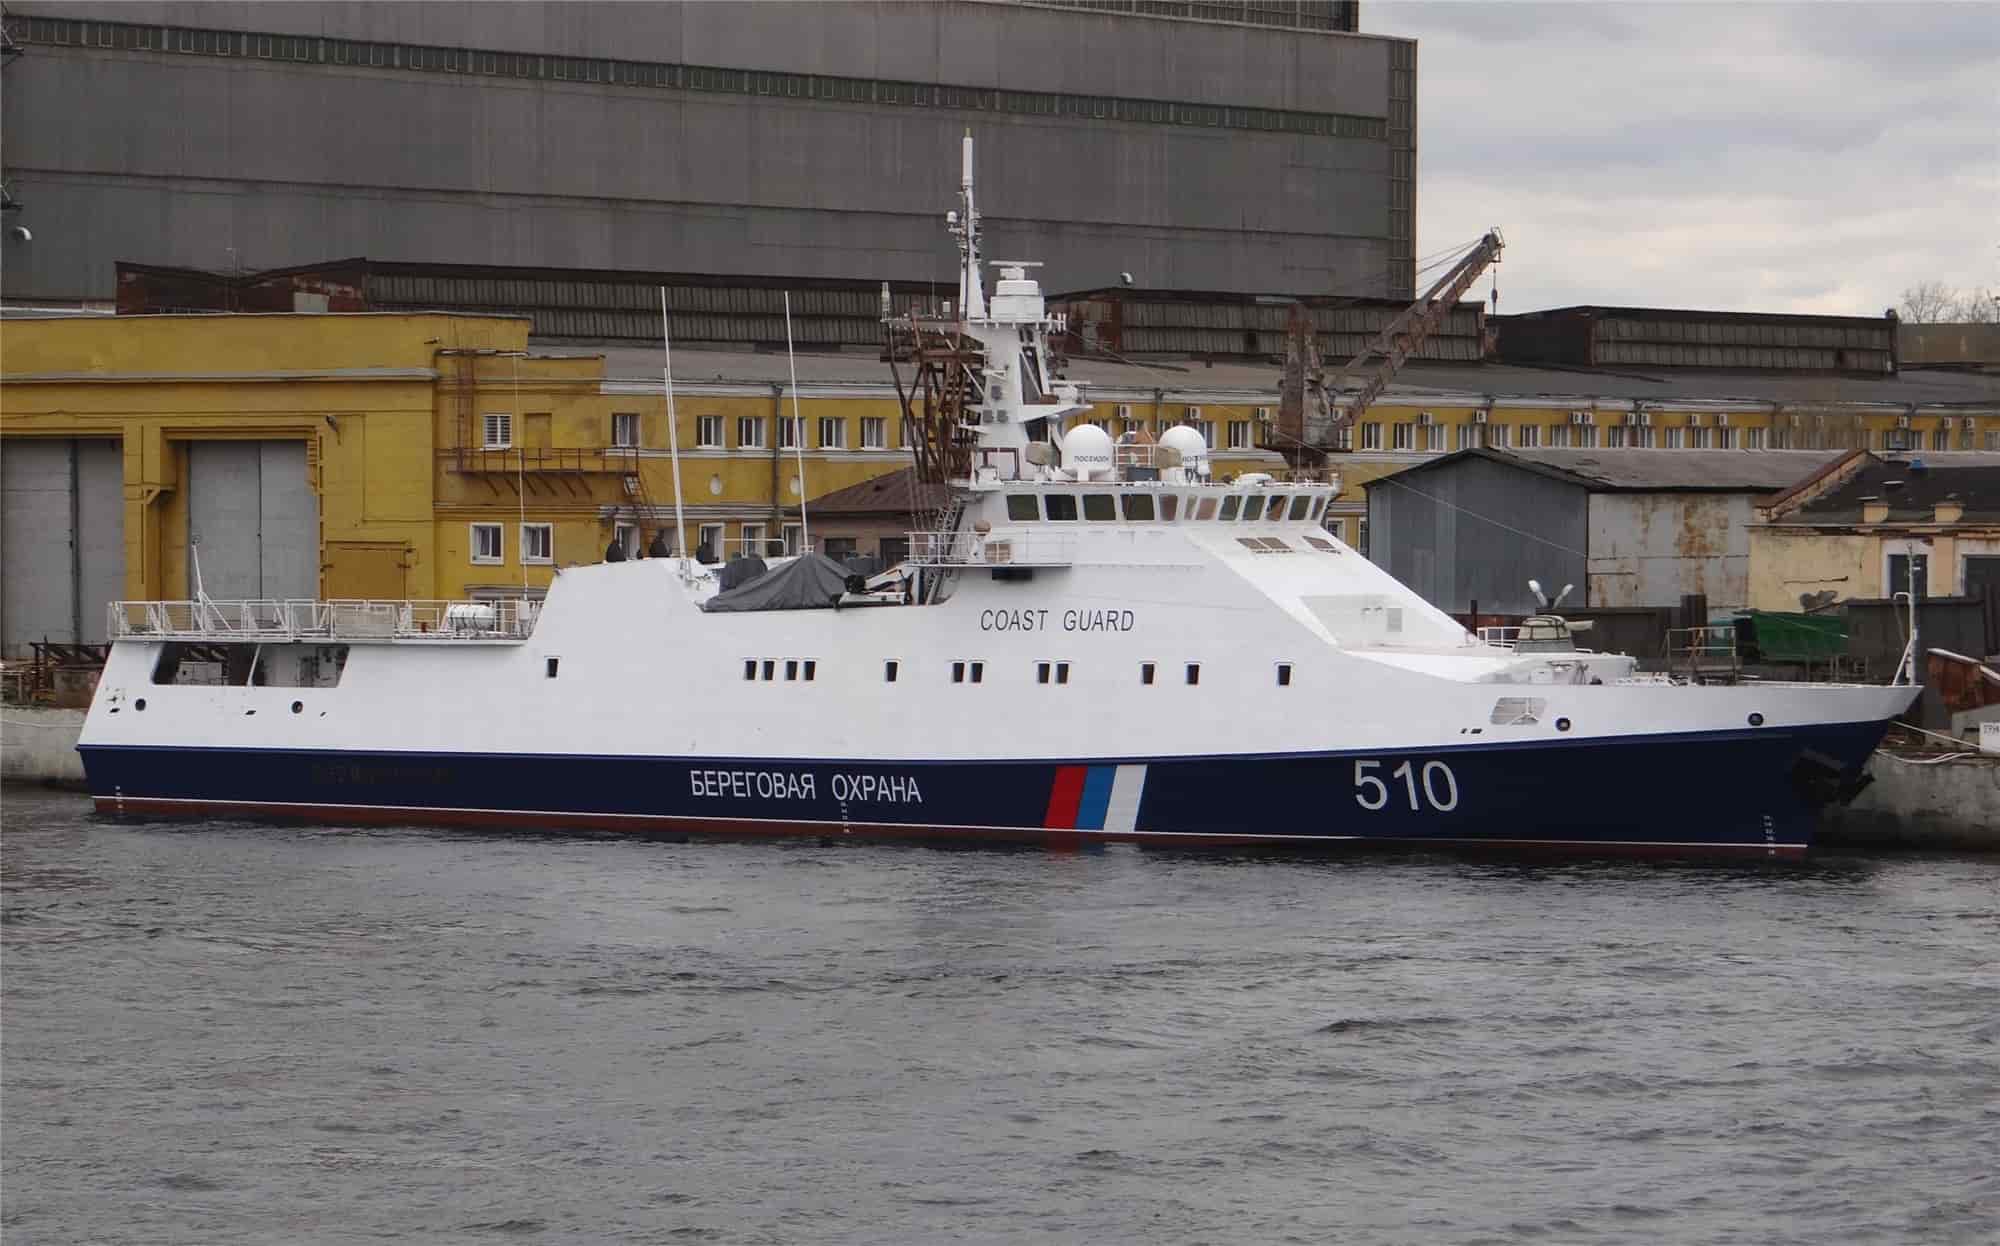 Nejnovější ruské lodě pobřežní stráže jsou neschopny funkce kvůli problémům s motory.